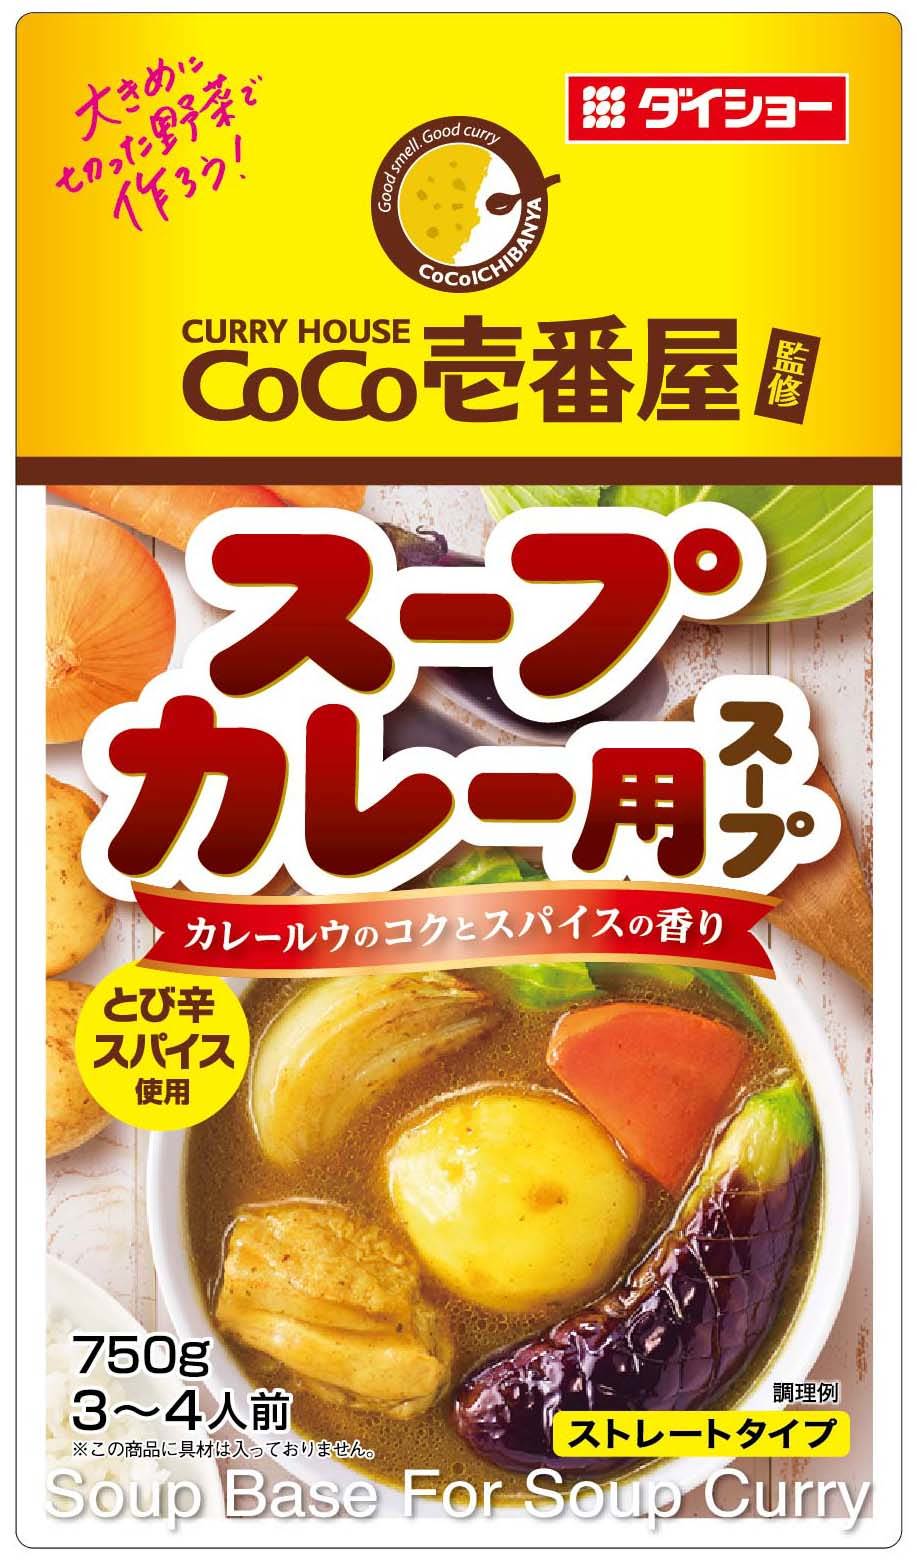 日本野菜ソムリエ協会が8月7日の創立20周年を記念して
レシピコンテストやプレゼントキャンペーンなどを実施！